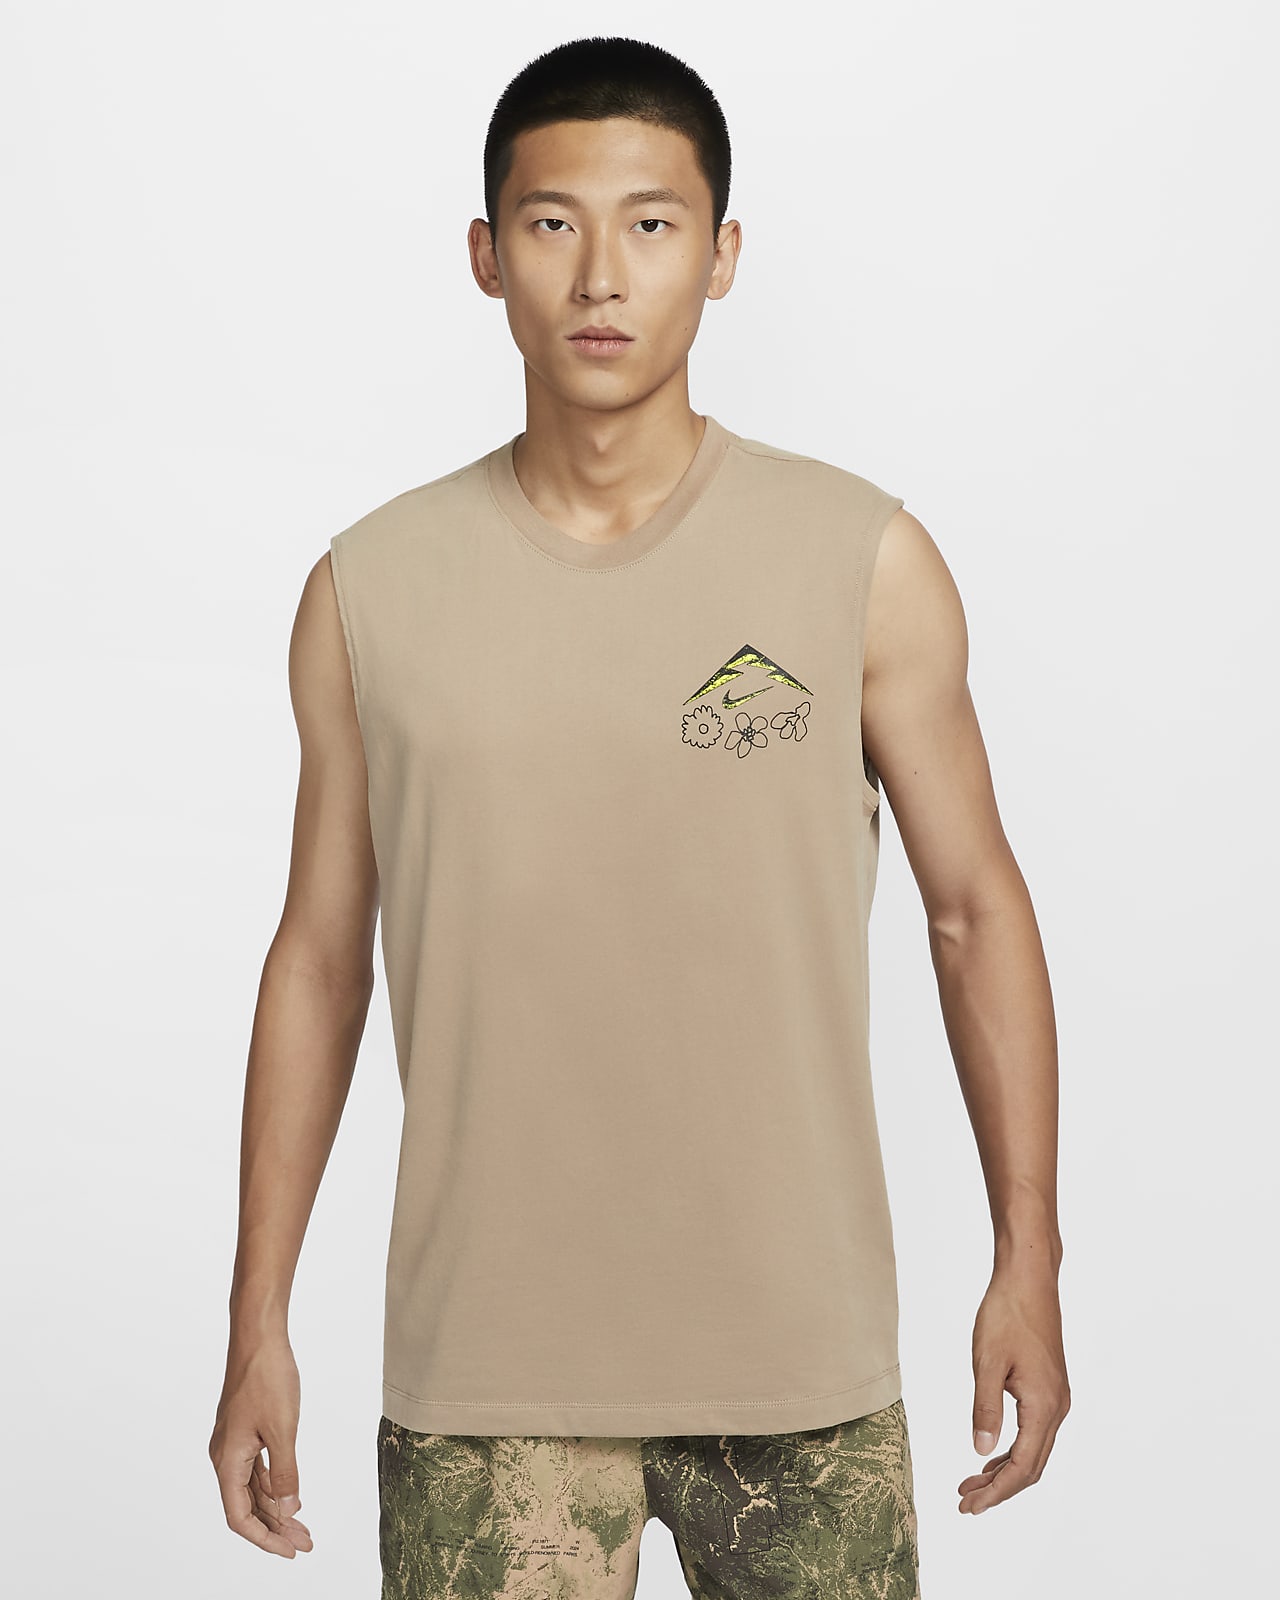 Nike Men's Dri-FIT Sleeveless Running T-Shirt